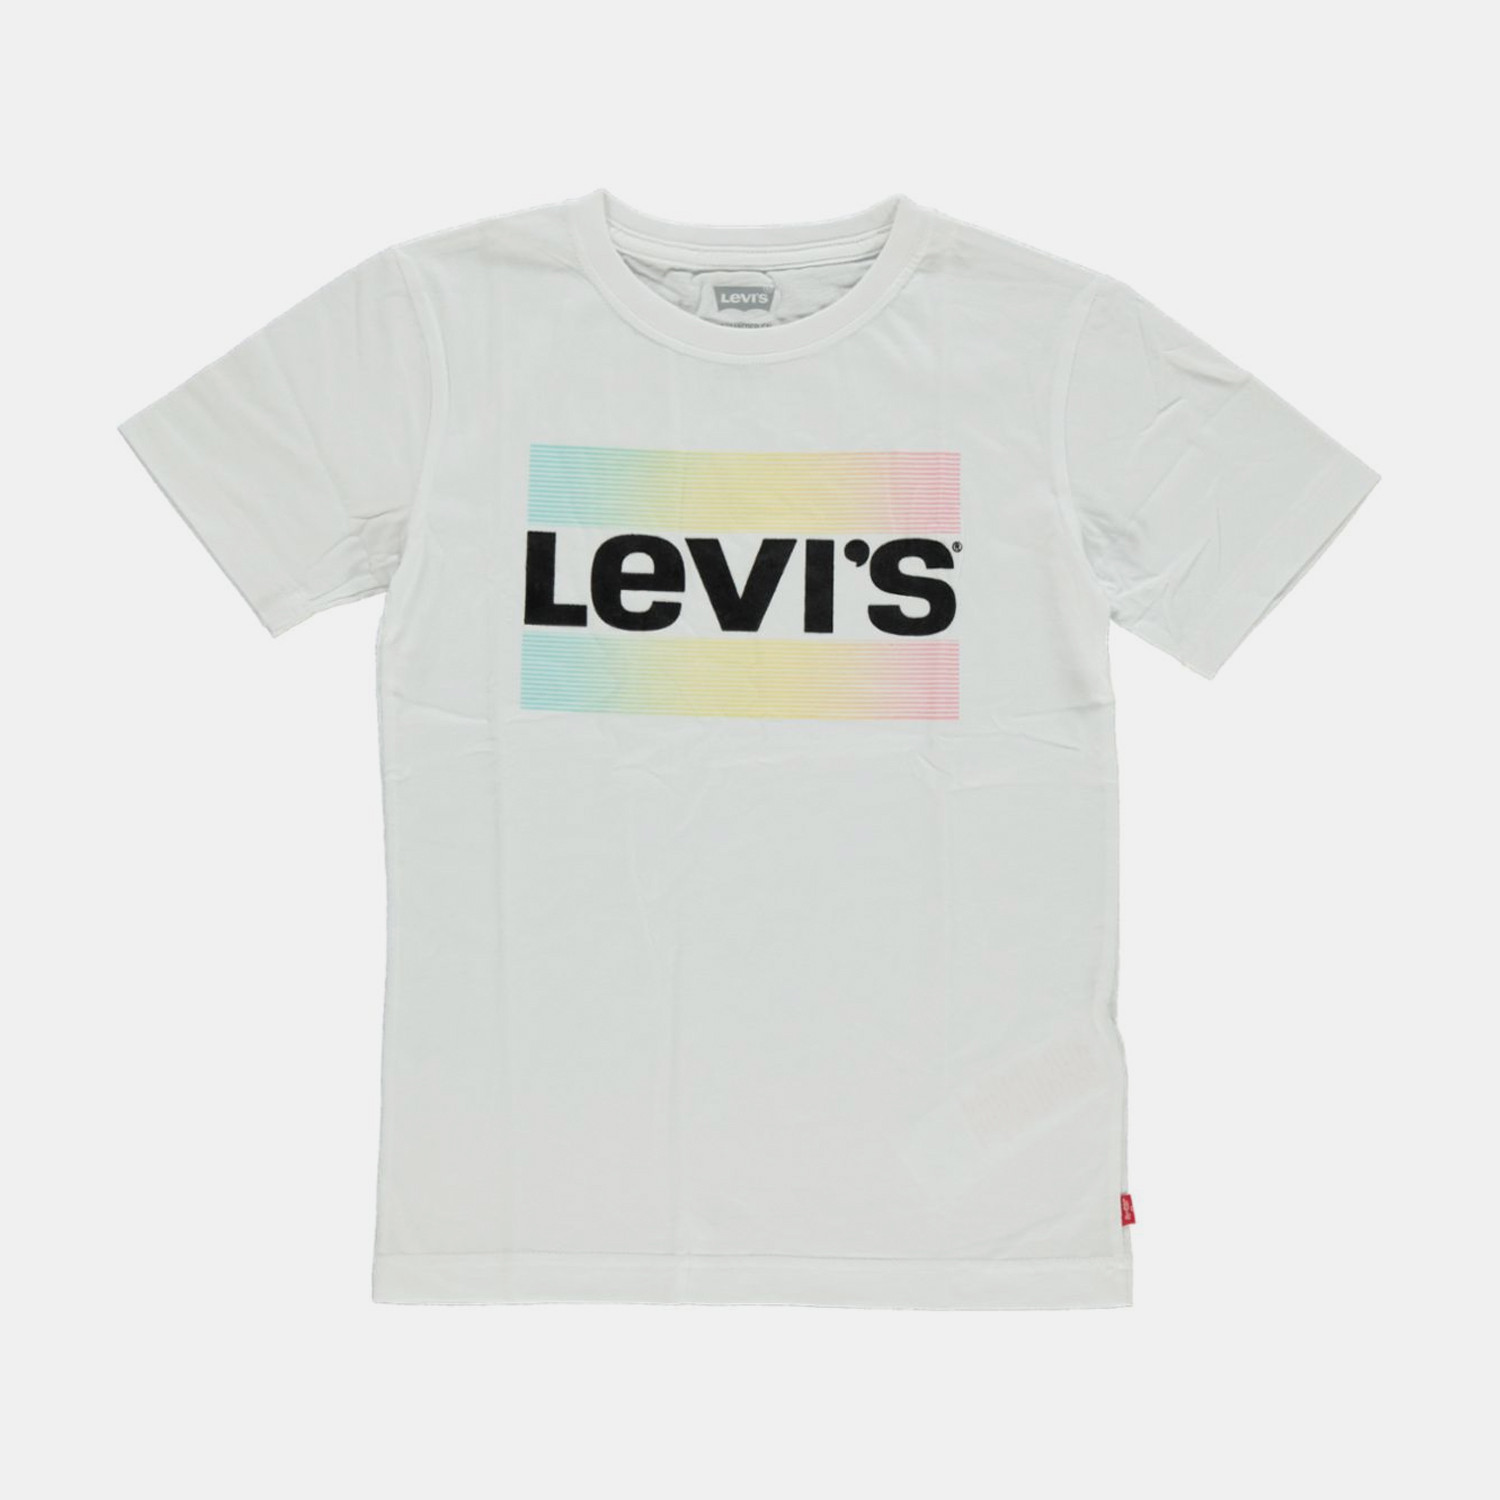 Levis Lvb California Sportswear Logo Παιδική Μπλούζα (9000075974_1539)